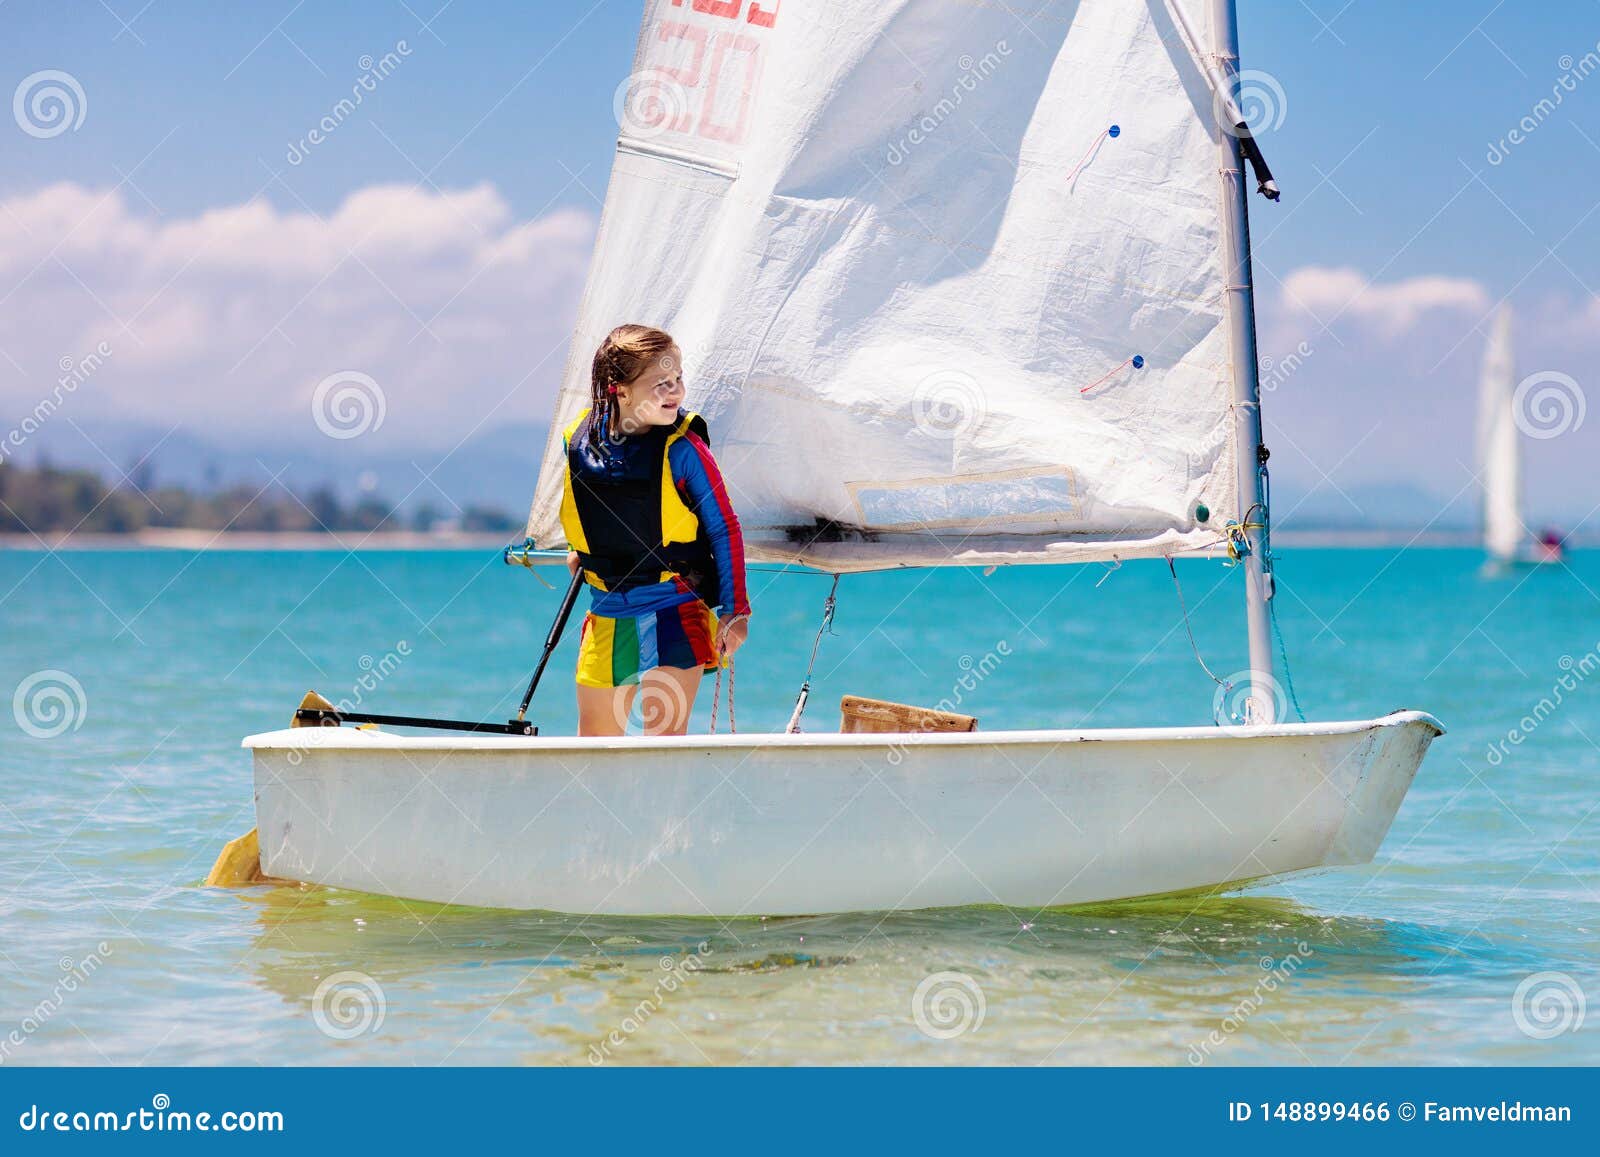 young 11 sailboat